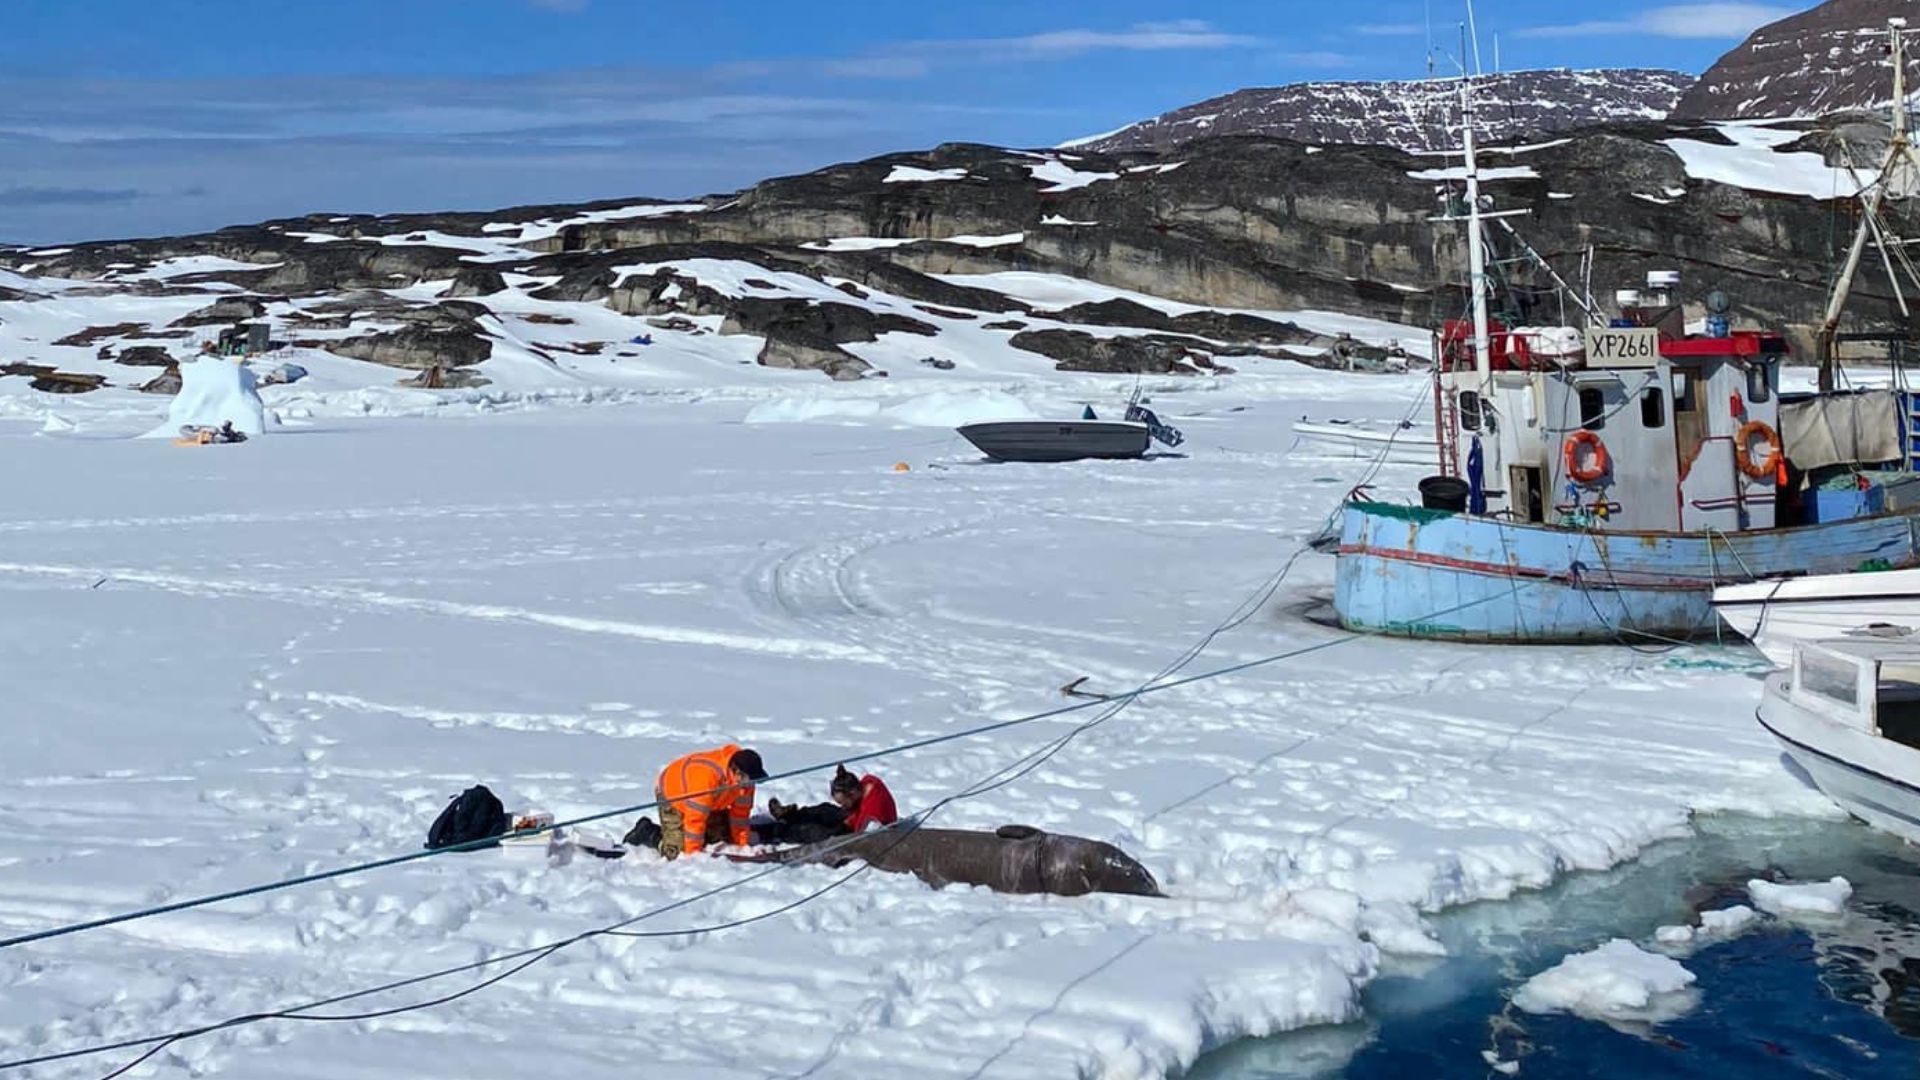 محققان در حال برداشت نمونه بافت ماهیچه از بدن کوسه گرینلند صیدشده در جزیره دیسکو در گرینلند